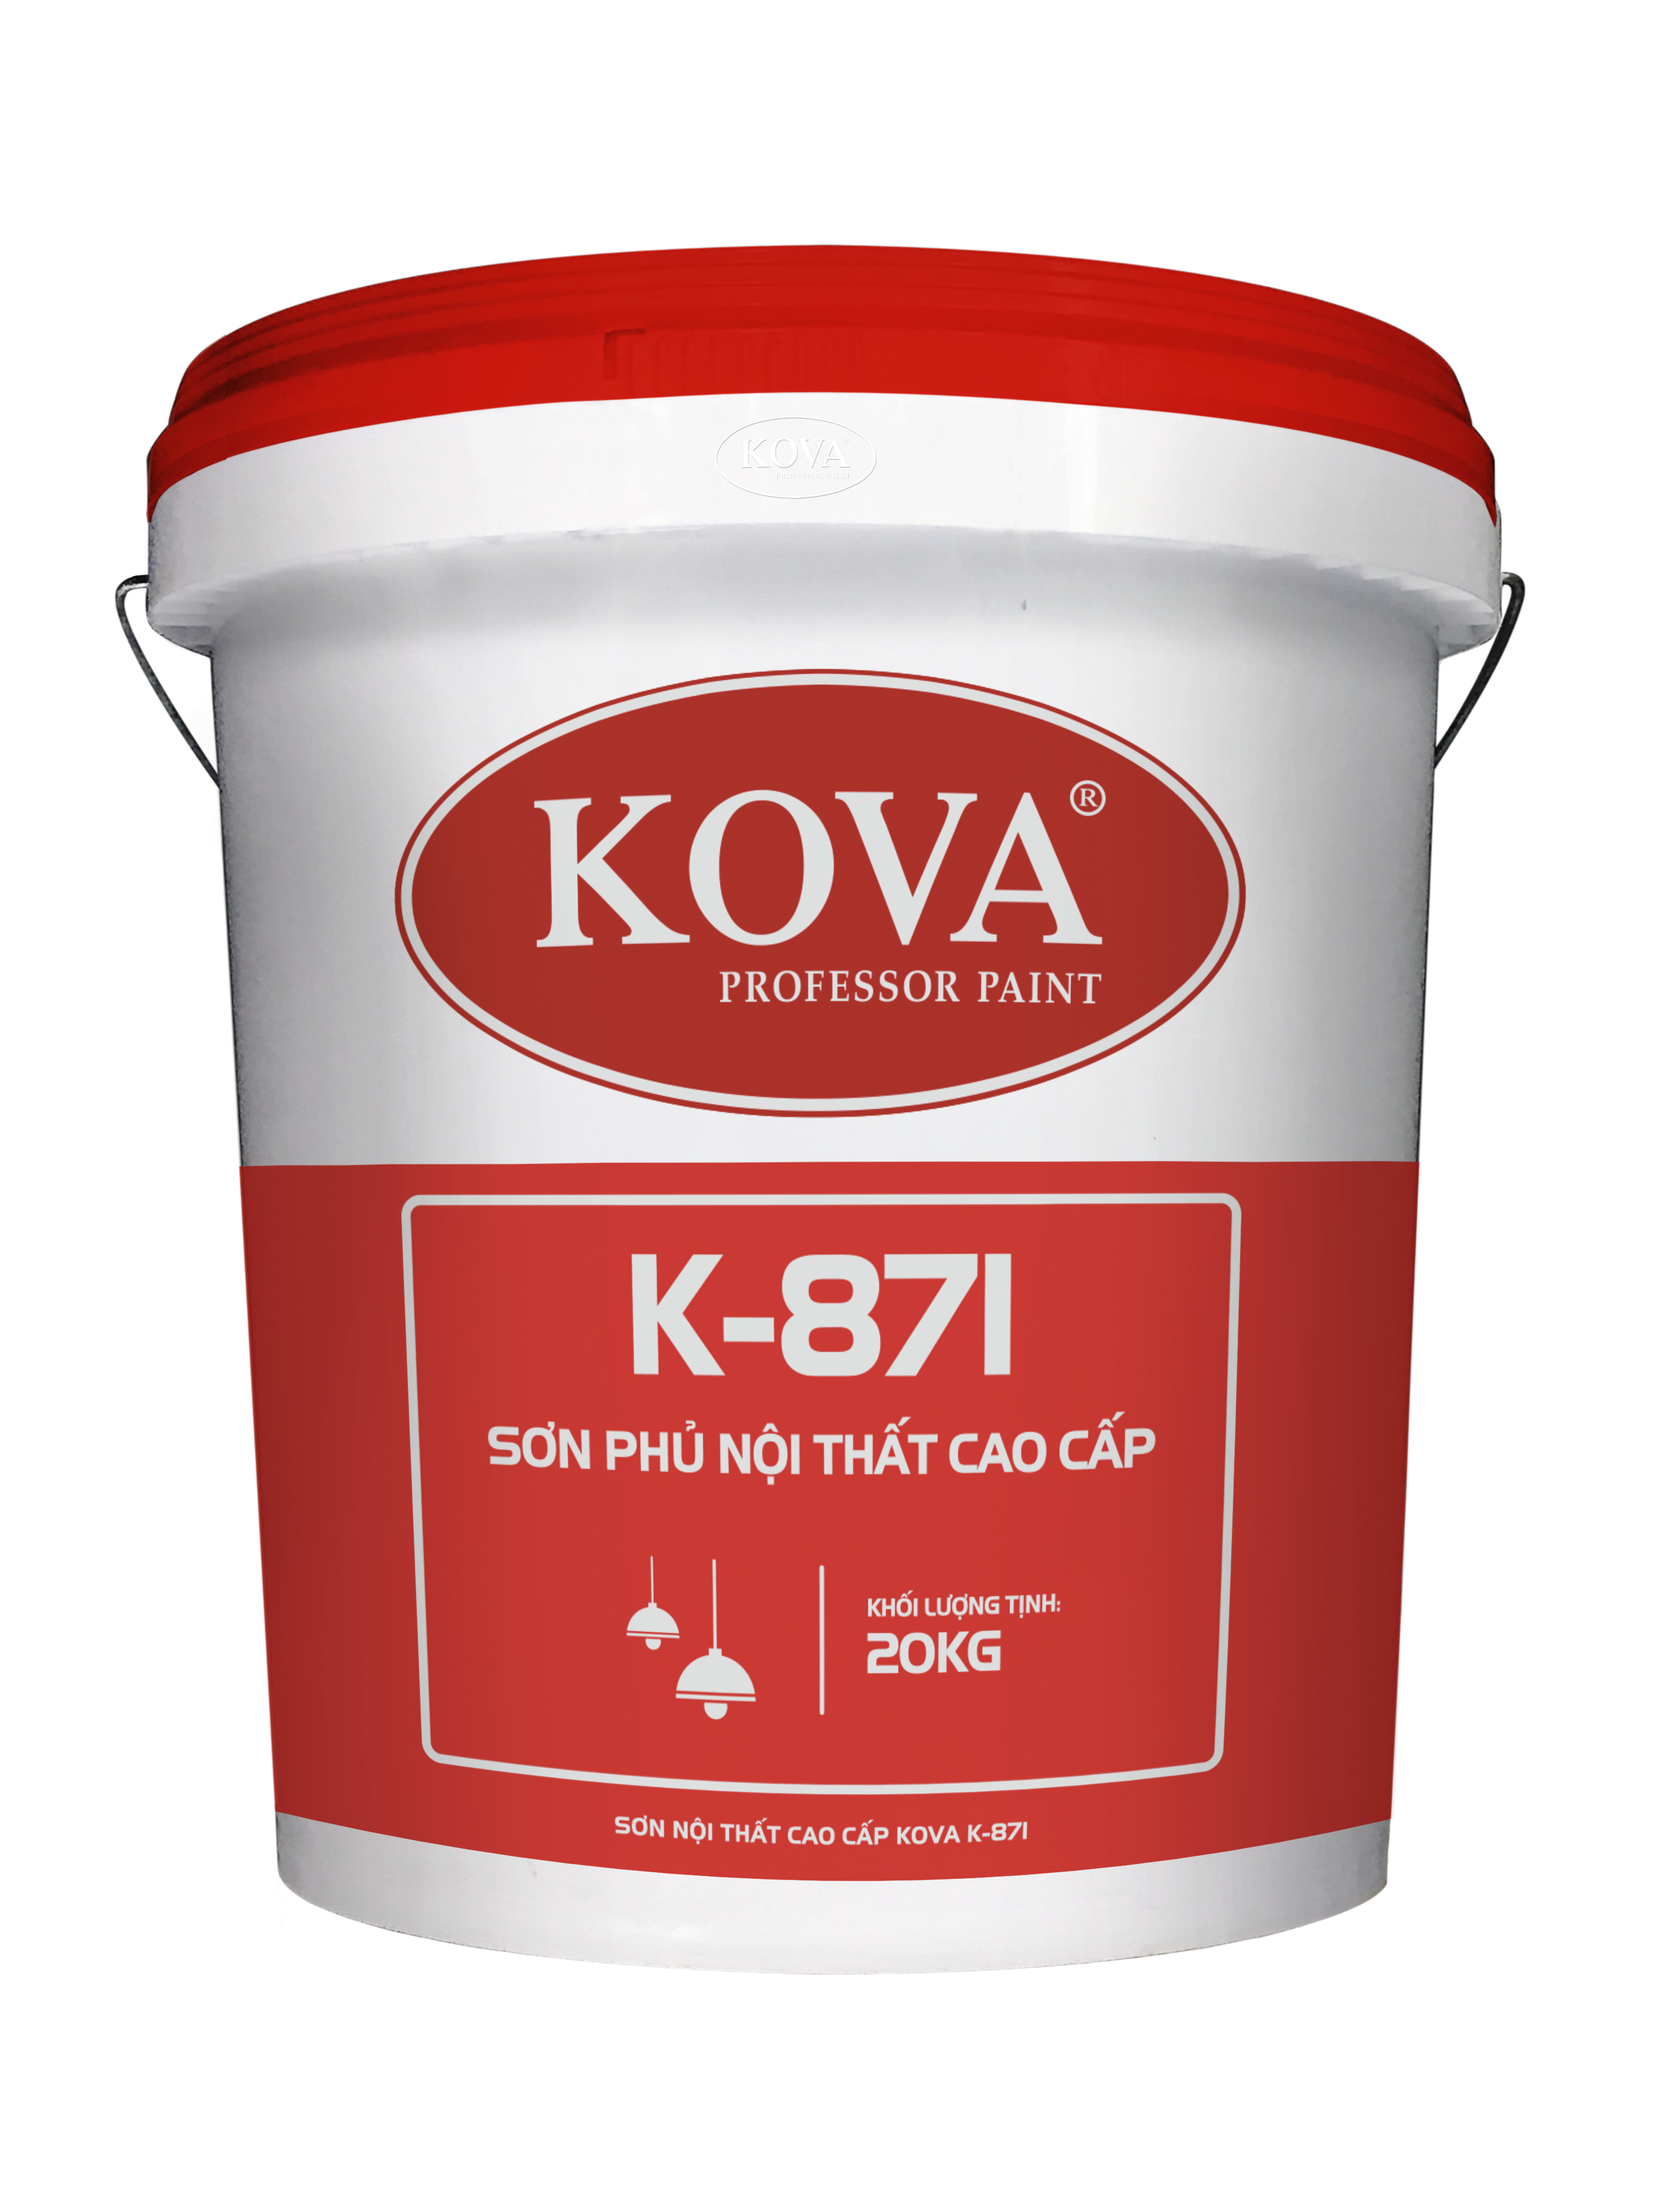 Sơn Kova k5501: Sơn Kova k5501 là một trong những sản phẩm sơn chất lượng cao và được ưa chuộng nhất trên thị trường. Đảm bảo sẽ mang đến cho bạn ngôi nhà đẹp nhất và chắc chắn sẽ vượt qua mọi kỳ vọng.